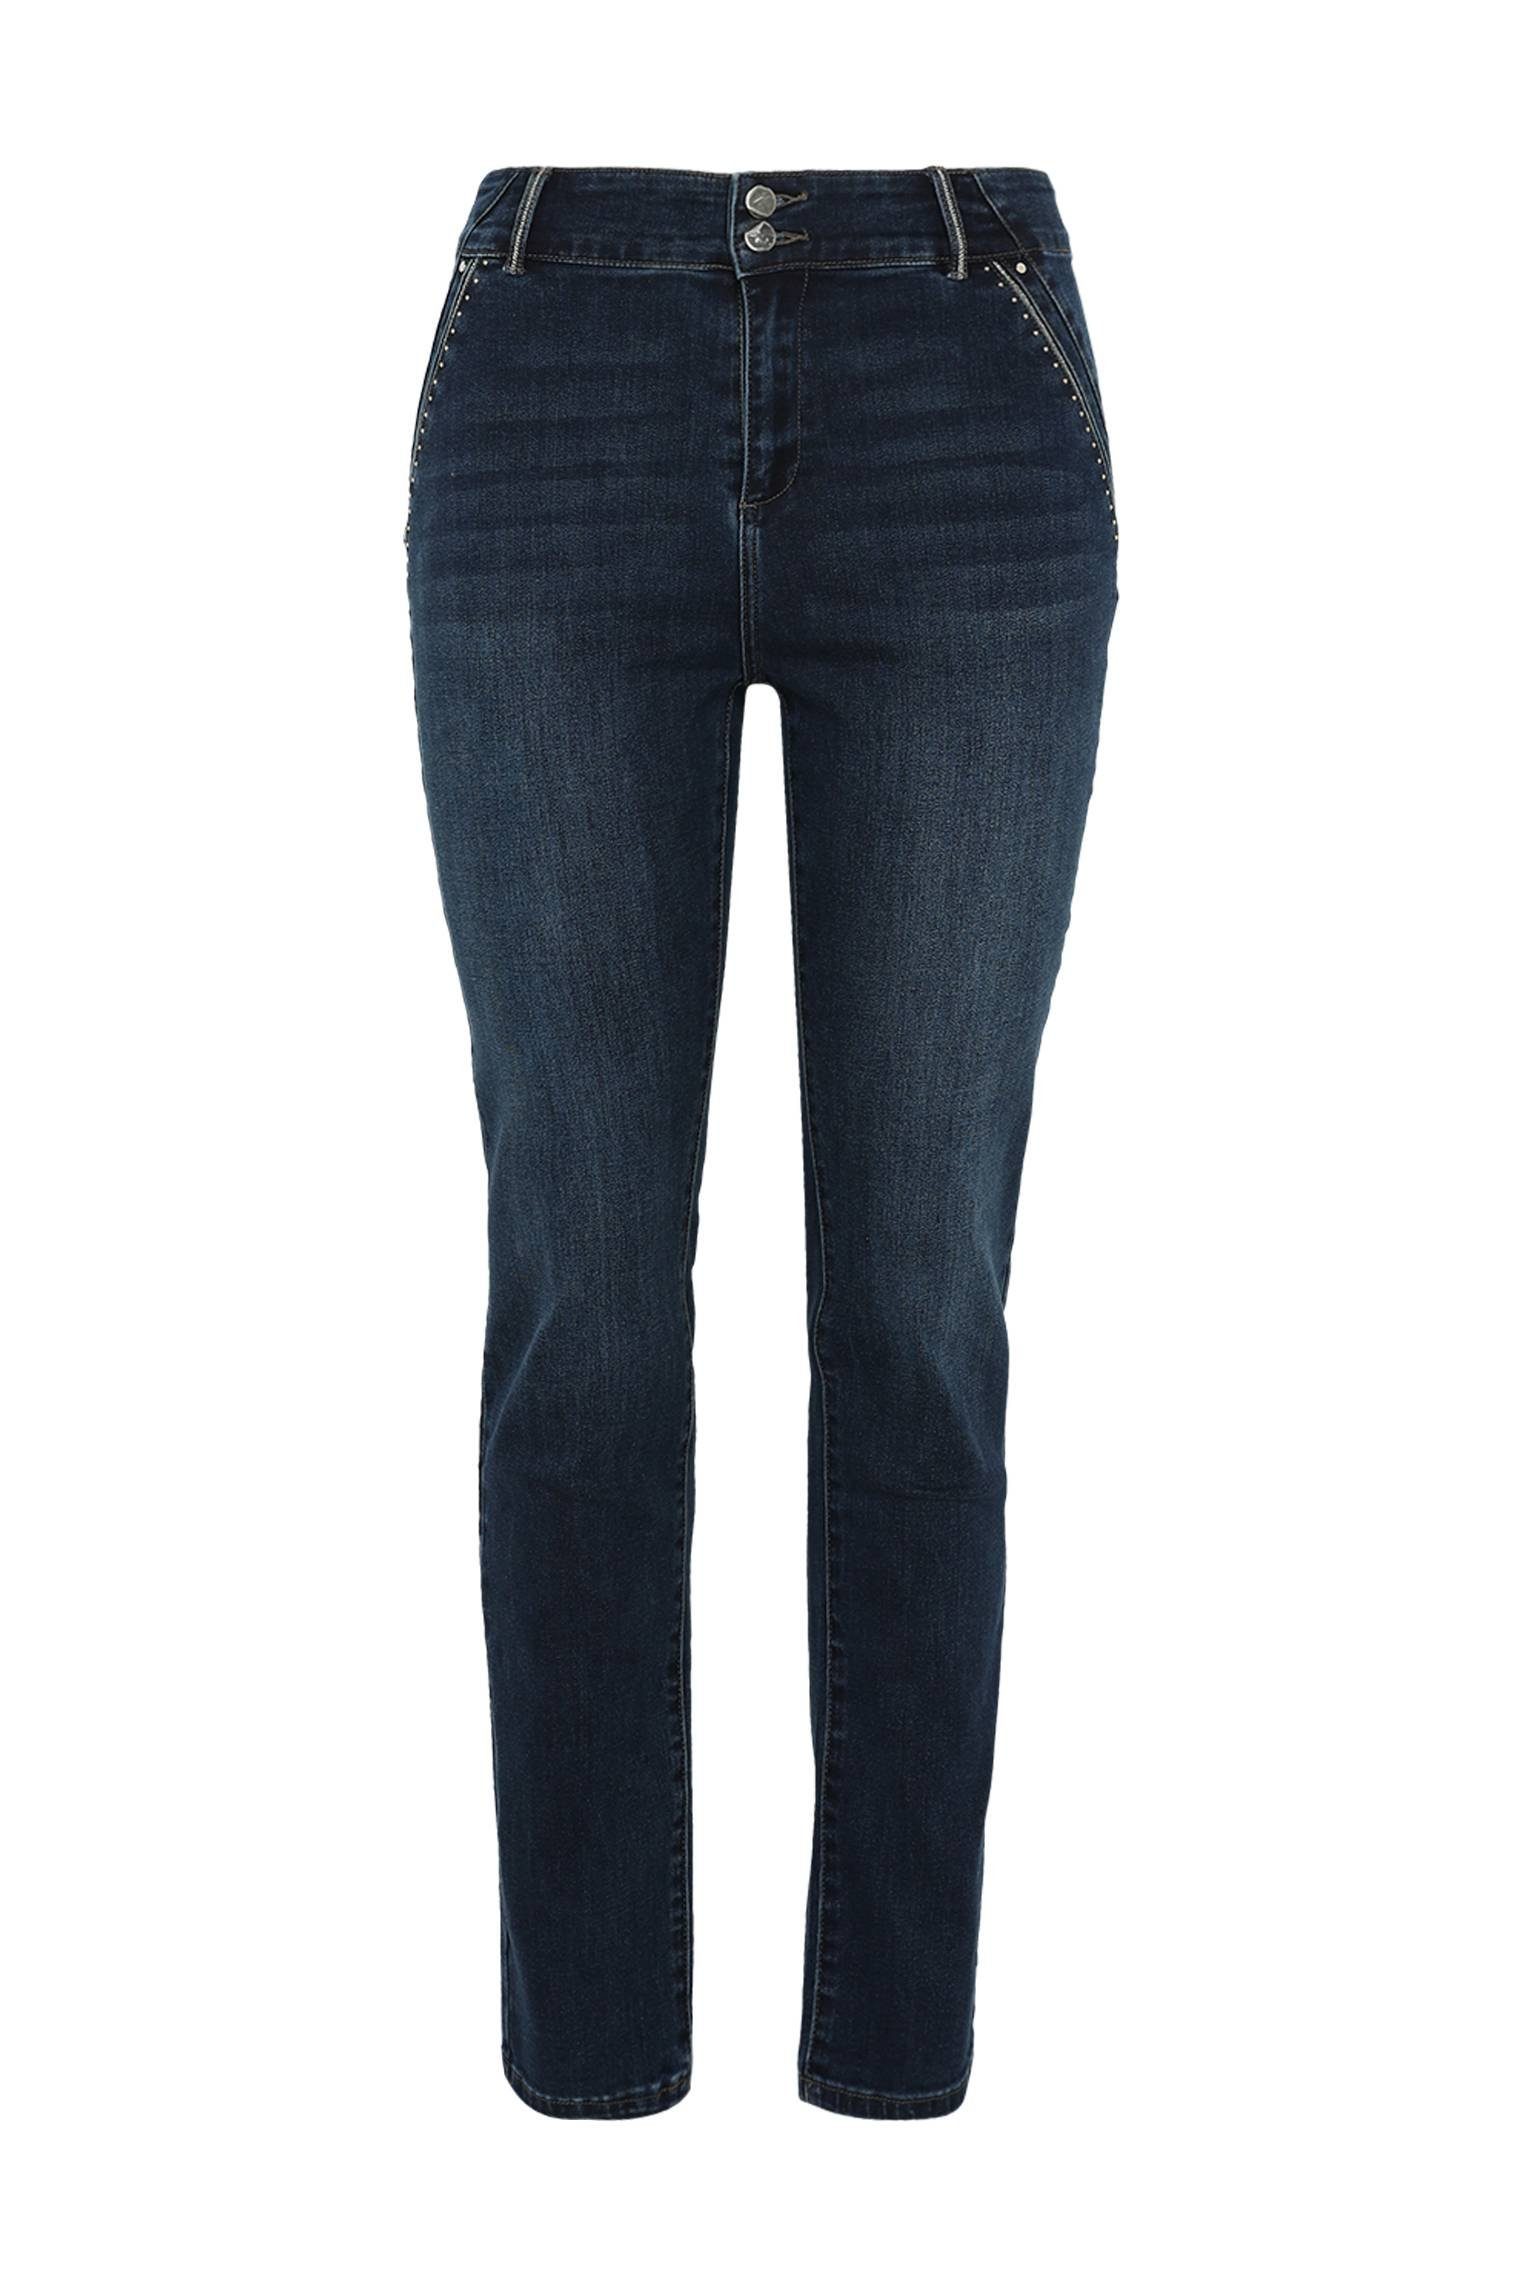 Paprika 5-Pocket-Jeans Slim-Fit-Jeans Louise L32 Mit Push-Up